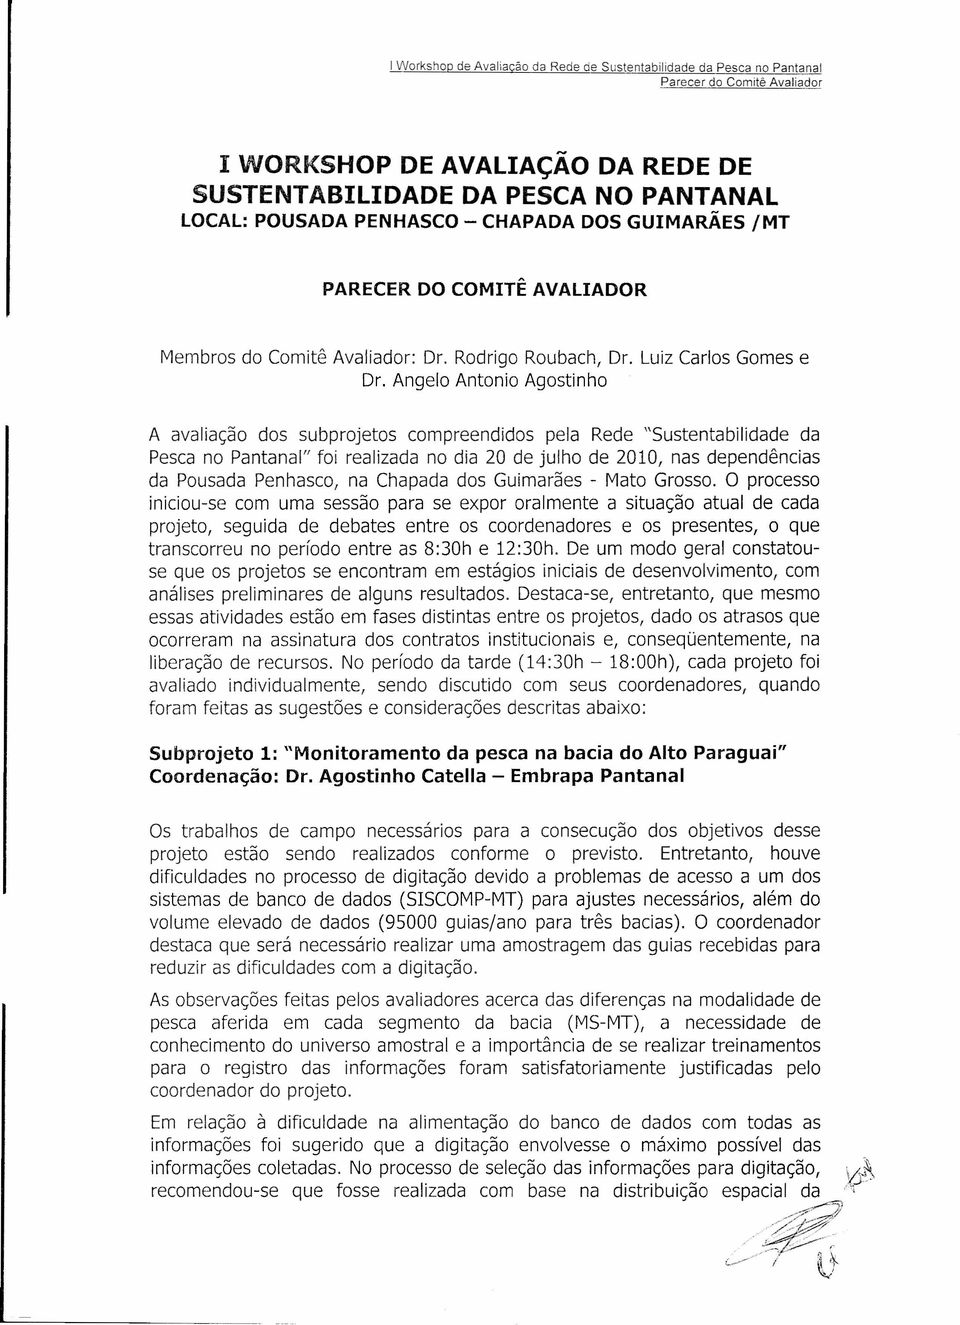 Angelo Antonio Agostinho A avaliação dos subprojetos compreendidos pela Rede "Sustentabilidade da Pesca no Pantanal" foi realizada no dia 20 de julho de 2010, nas dependências da Pousada Penhasco, na